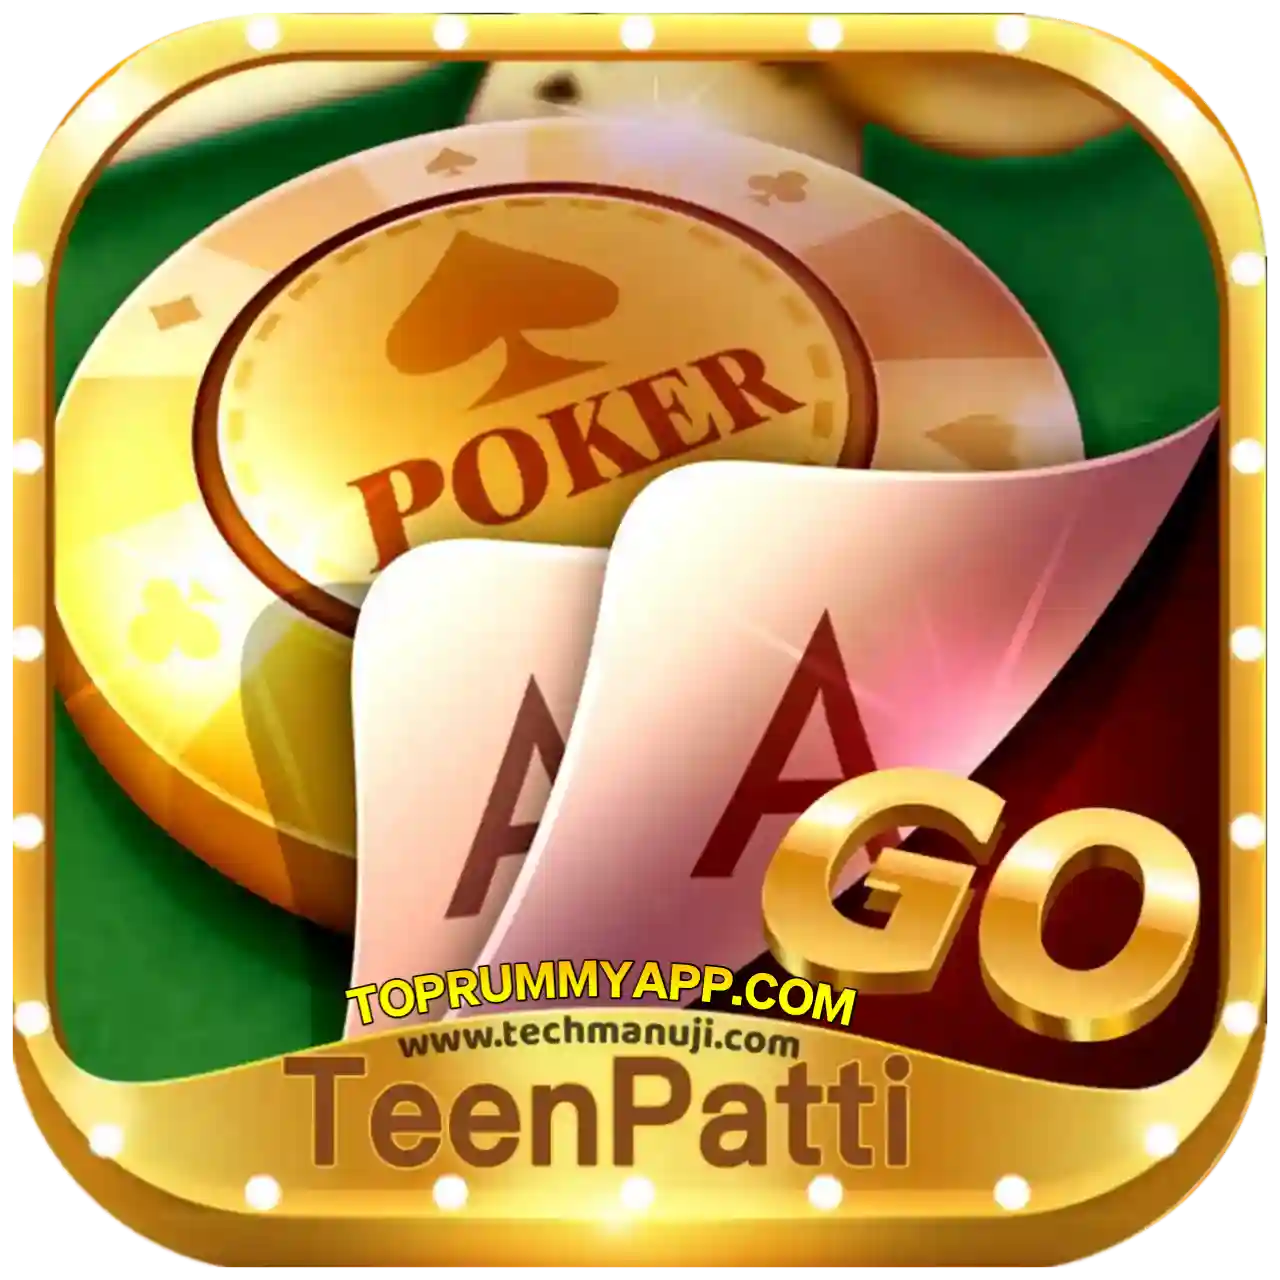 Teen Patti Go App Download All Teen Patti App List ₹41 Bonus